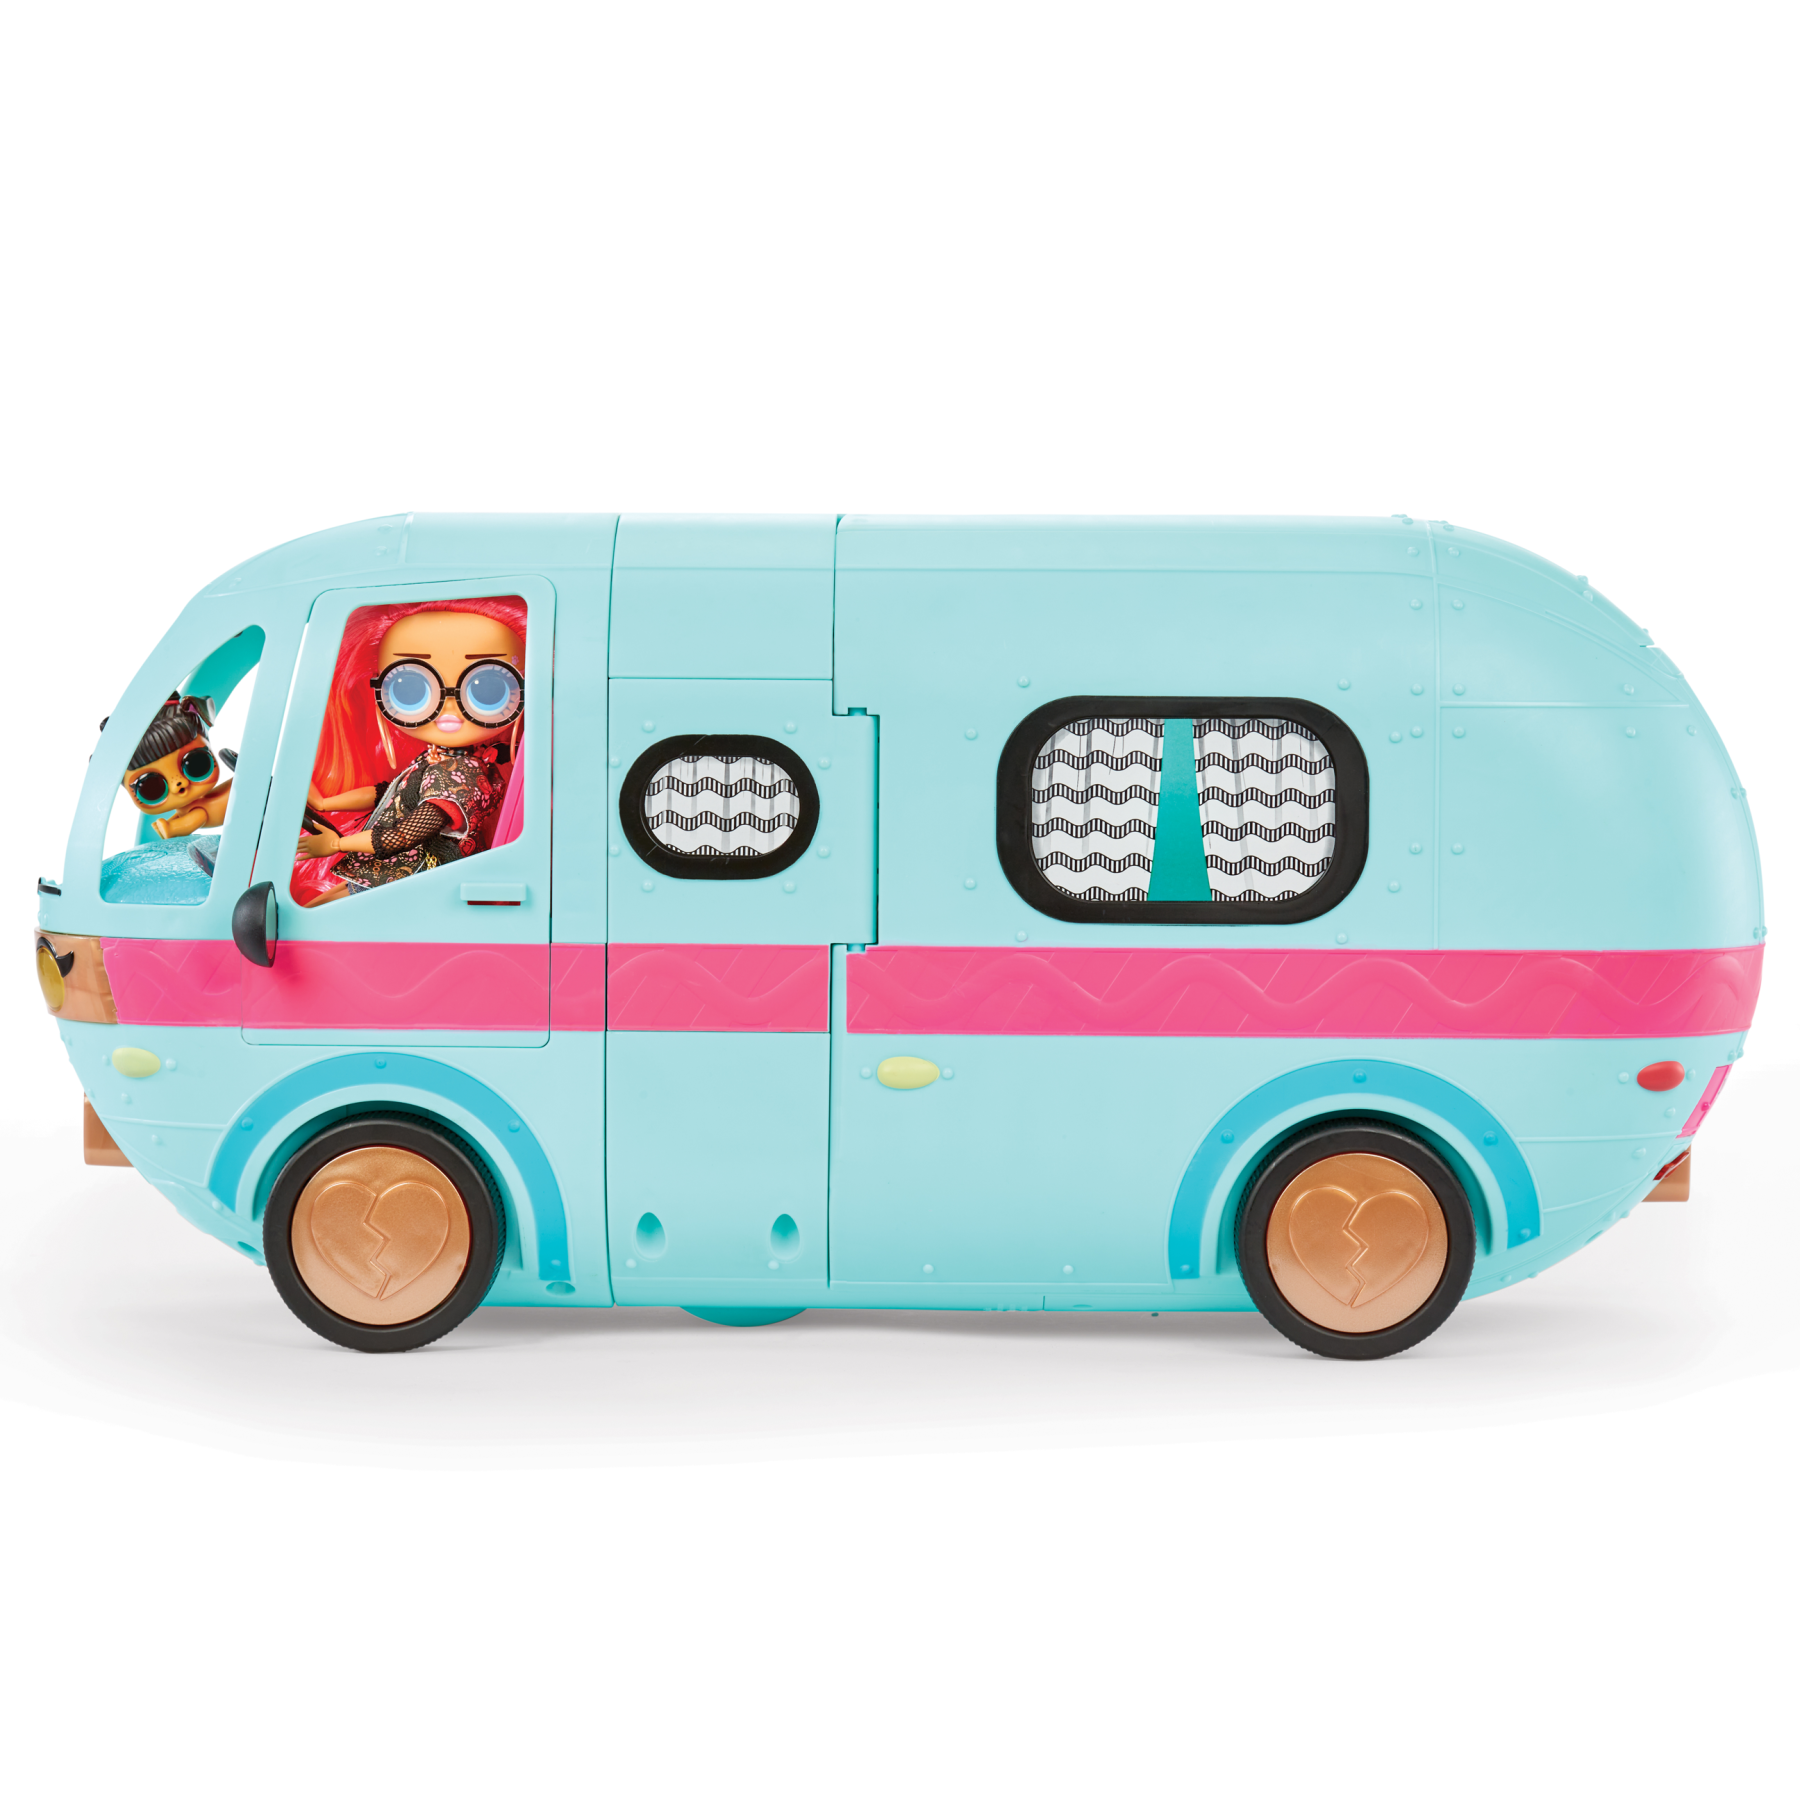 Il nuovo glam n’ go camper è il veicolo più cool per viaggiare con stile. presenta oltre 50 sorprese - LOL